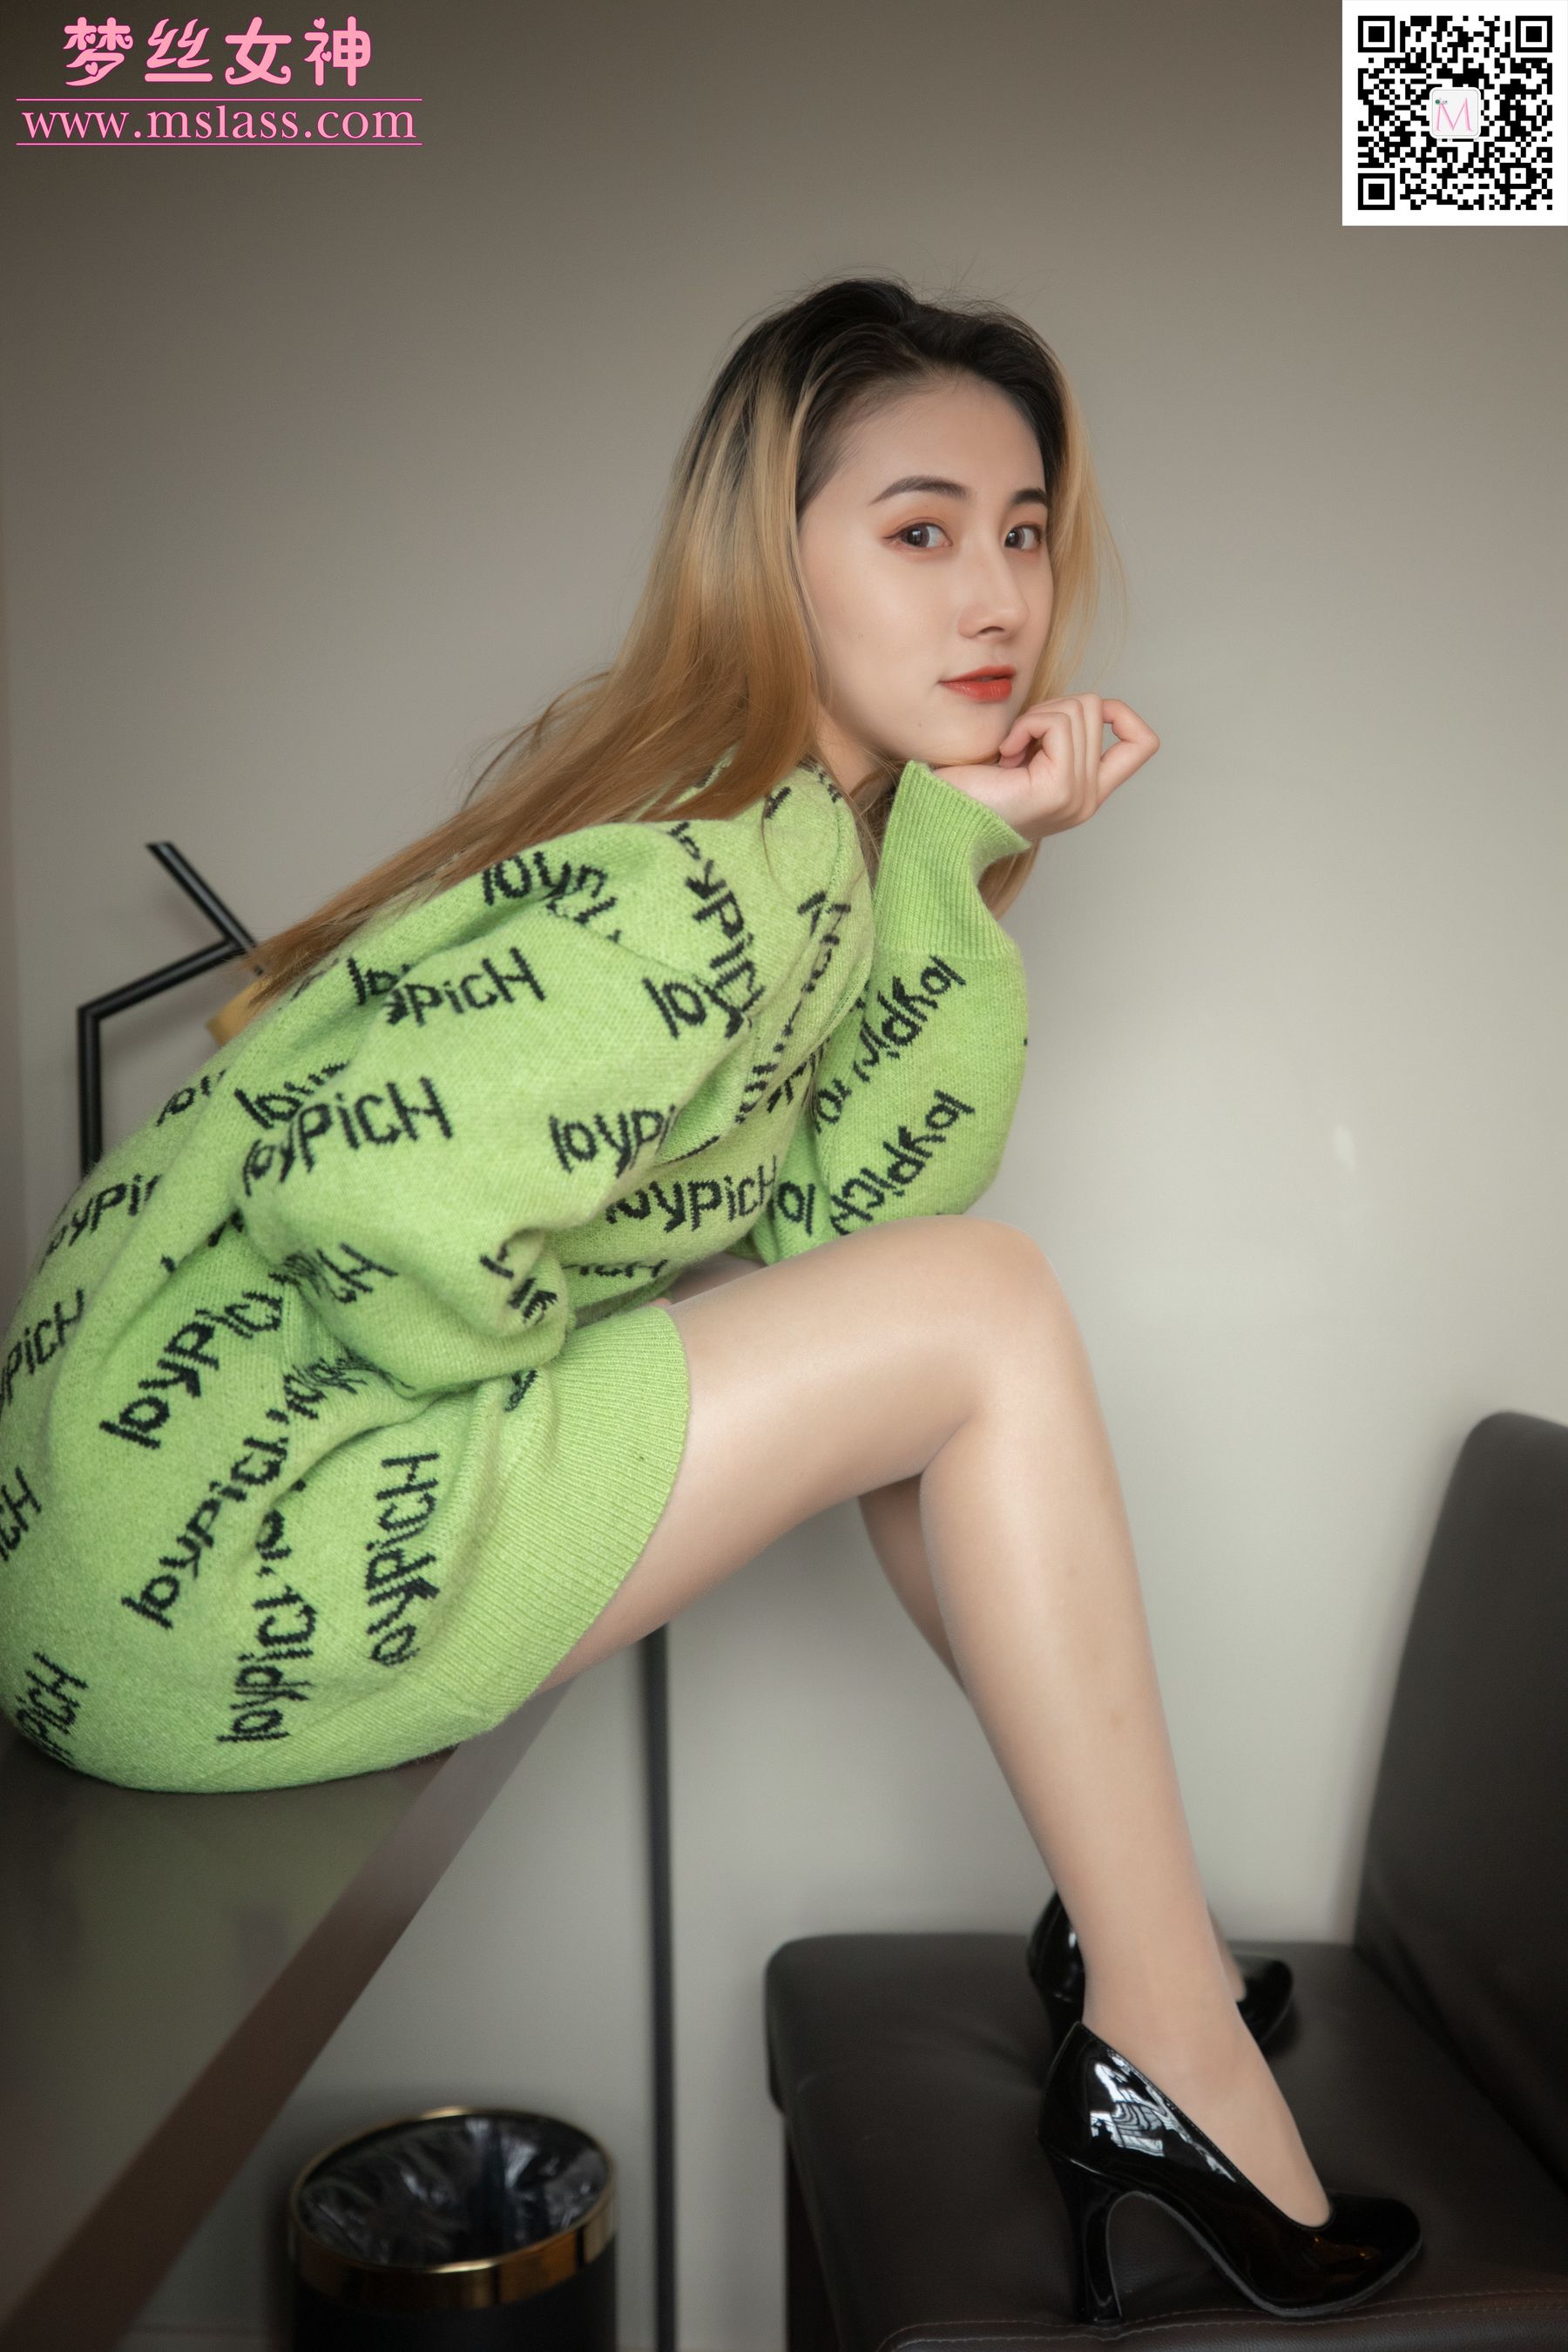 [梦丝女神MSLASS]  小允儿 喜欢绿绿的衣服/(64P)